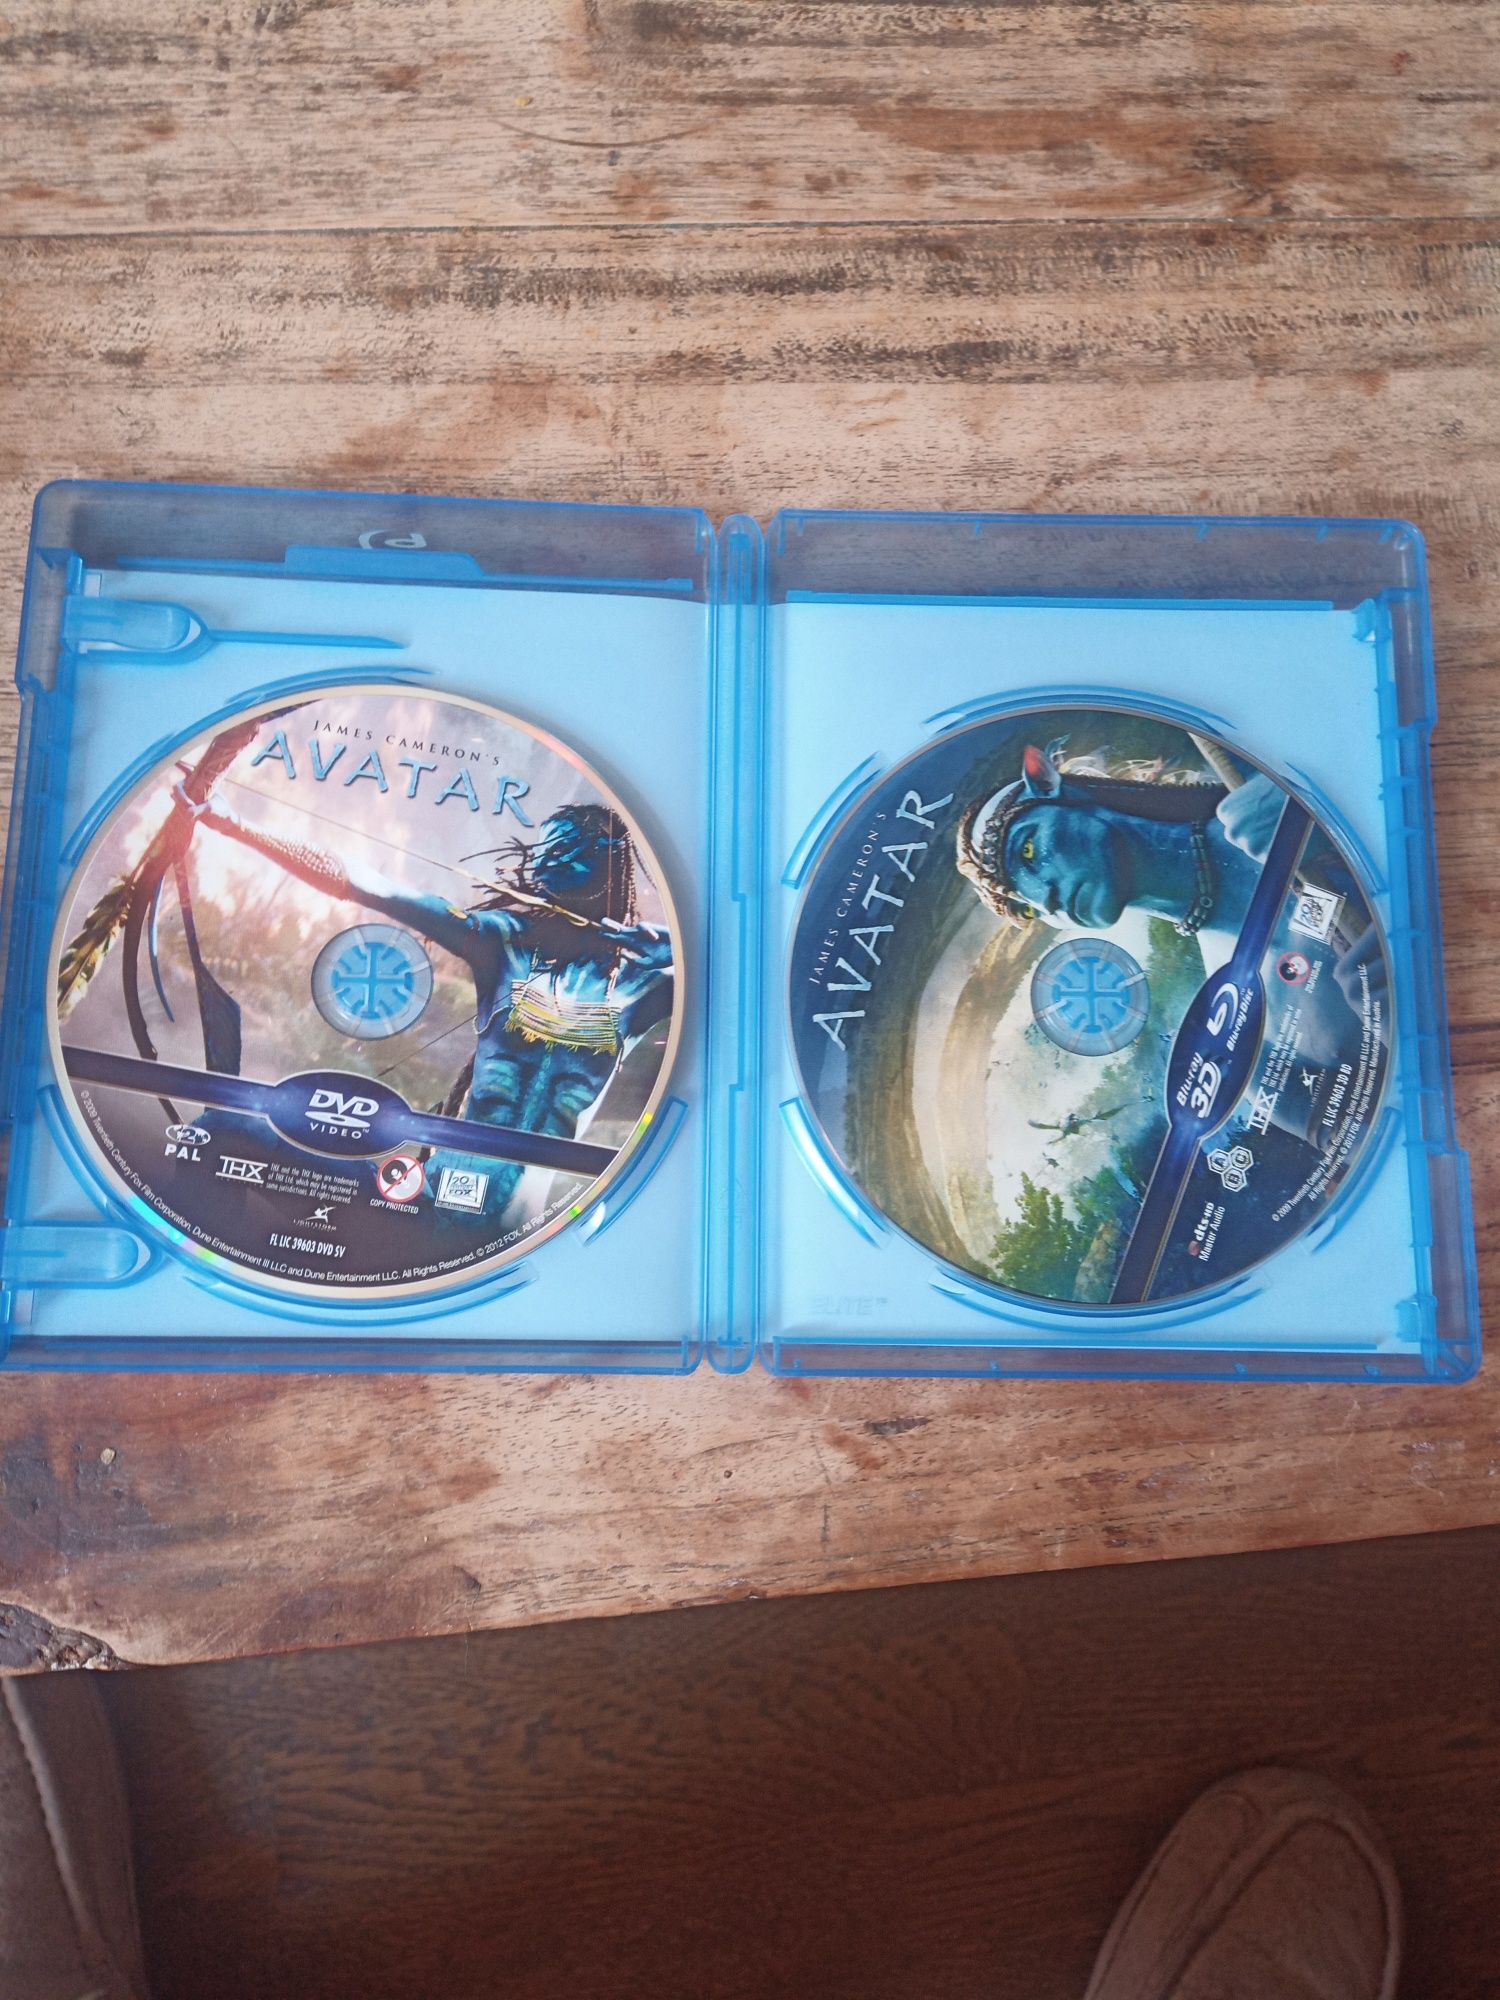 Avatar 3D [Blu-Ray 3D]+[DVD]

Avata